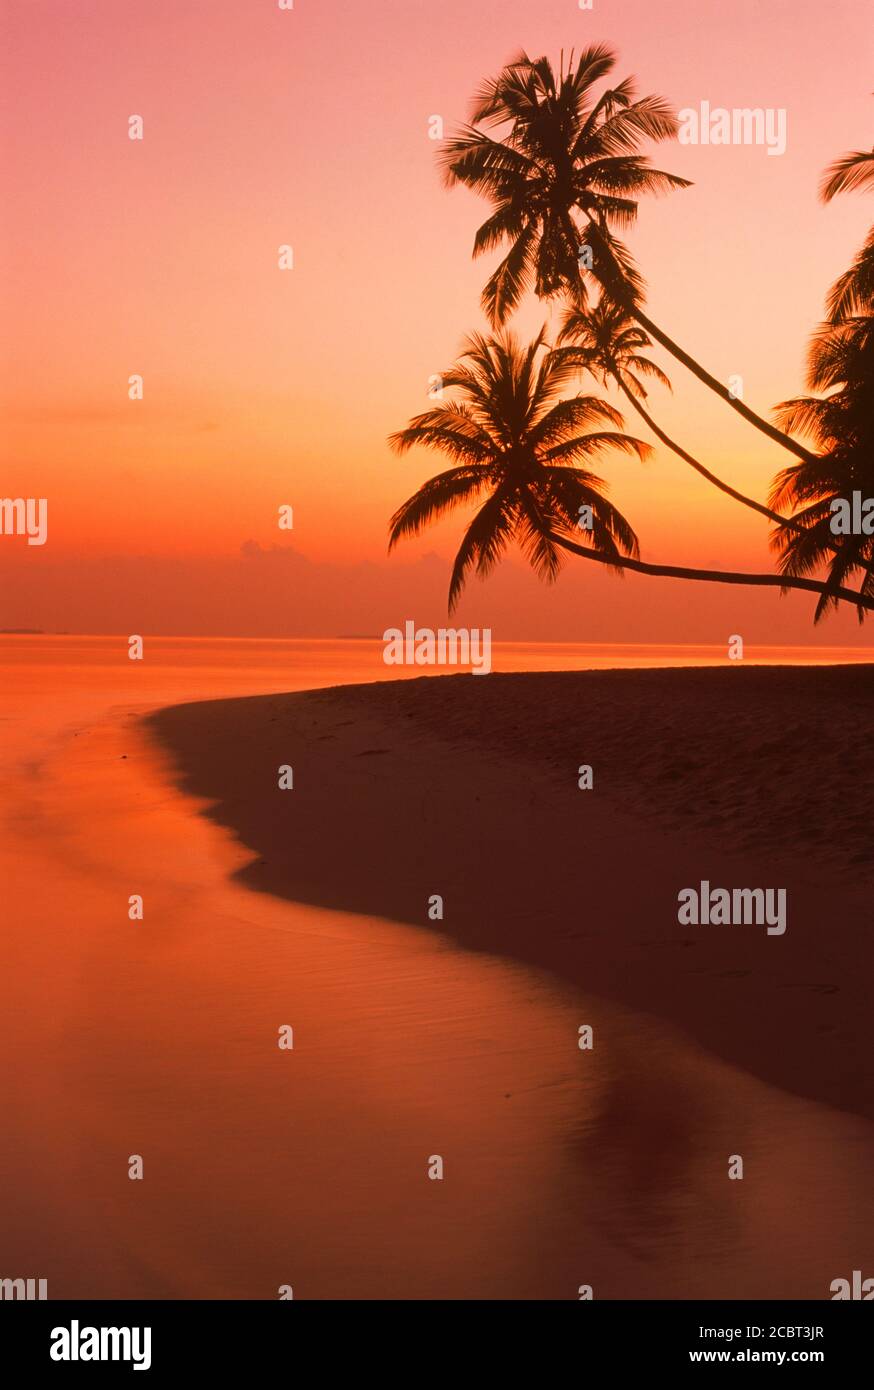 Palmiers s'étendant sur un rivage sablonneux et sur l'océan Indien L'île de Fihalhohi aux Maldives au lever du soleil Banque D'Images